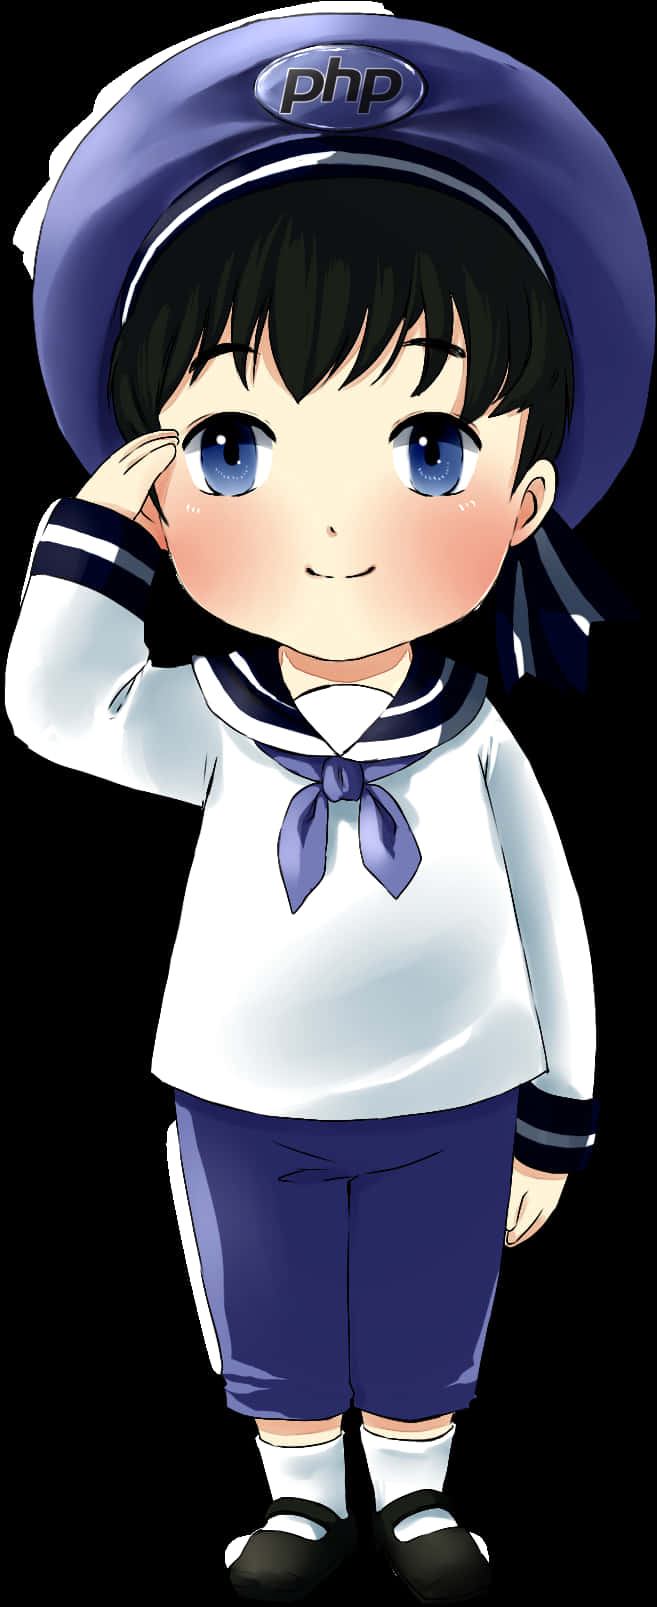 Anime Boyin Sailor Outfit